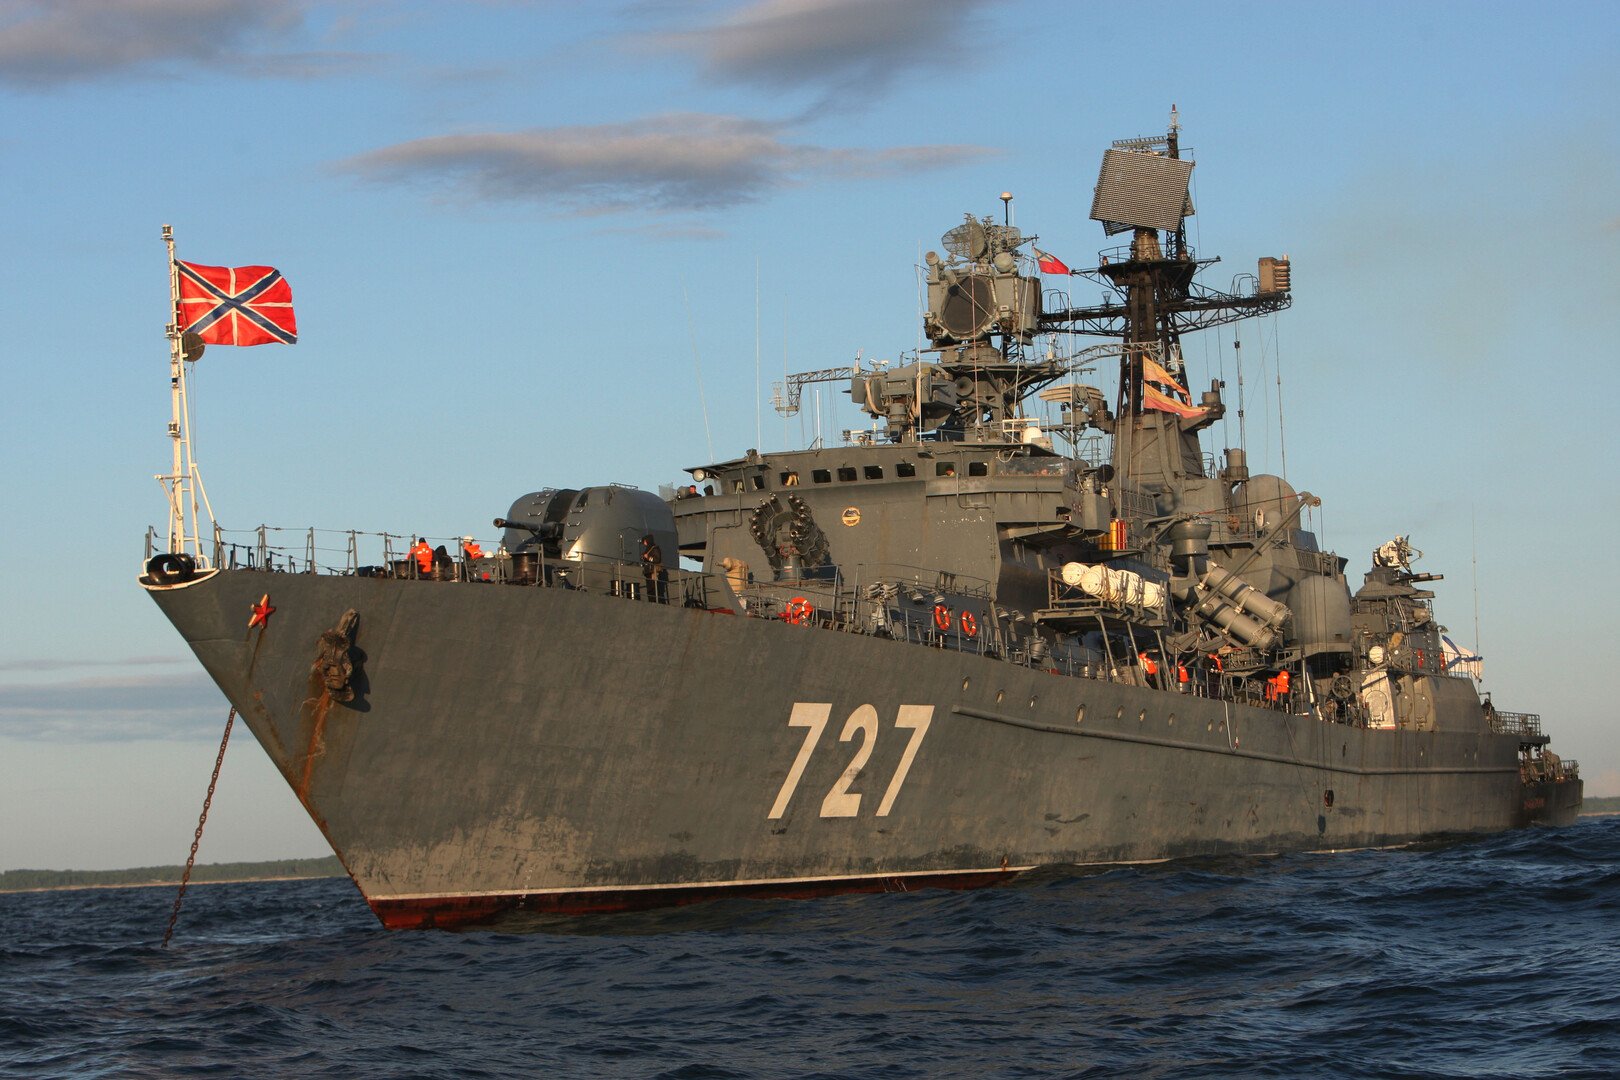 انطلاق مجموعة سفن روسية في دورية بعيدة تشمل المحيط الهندي